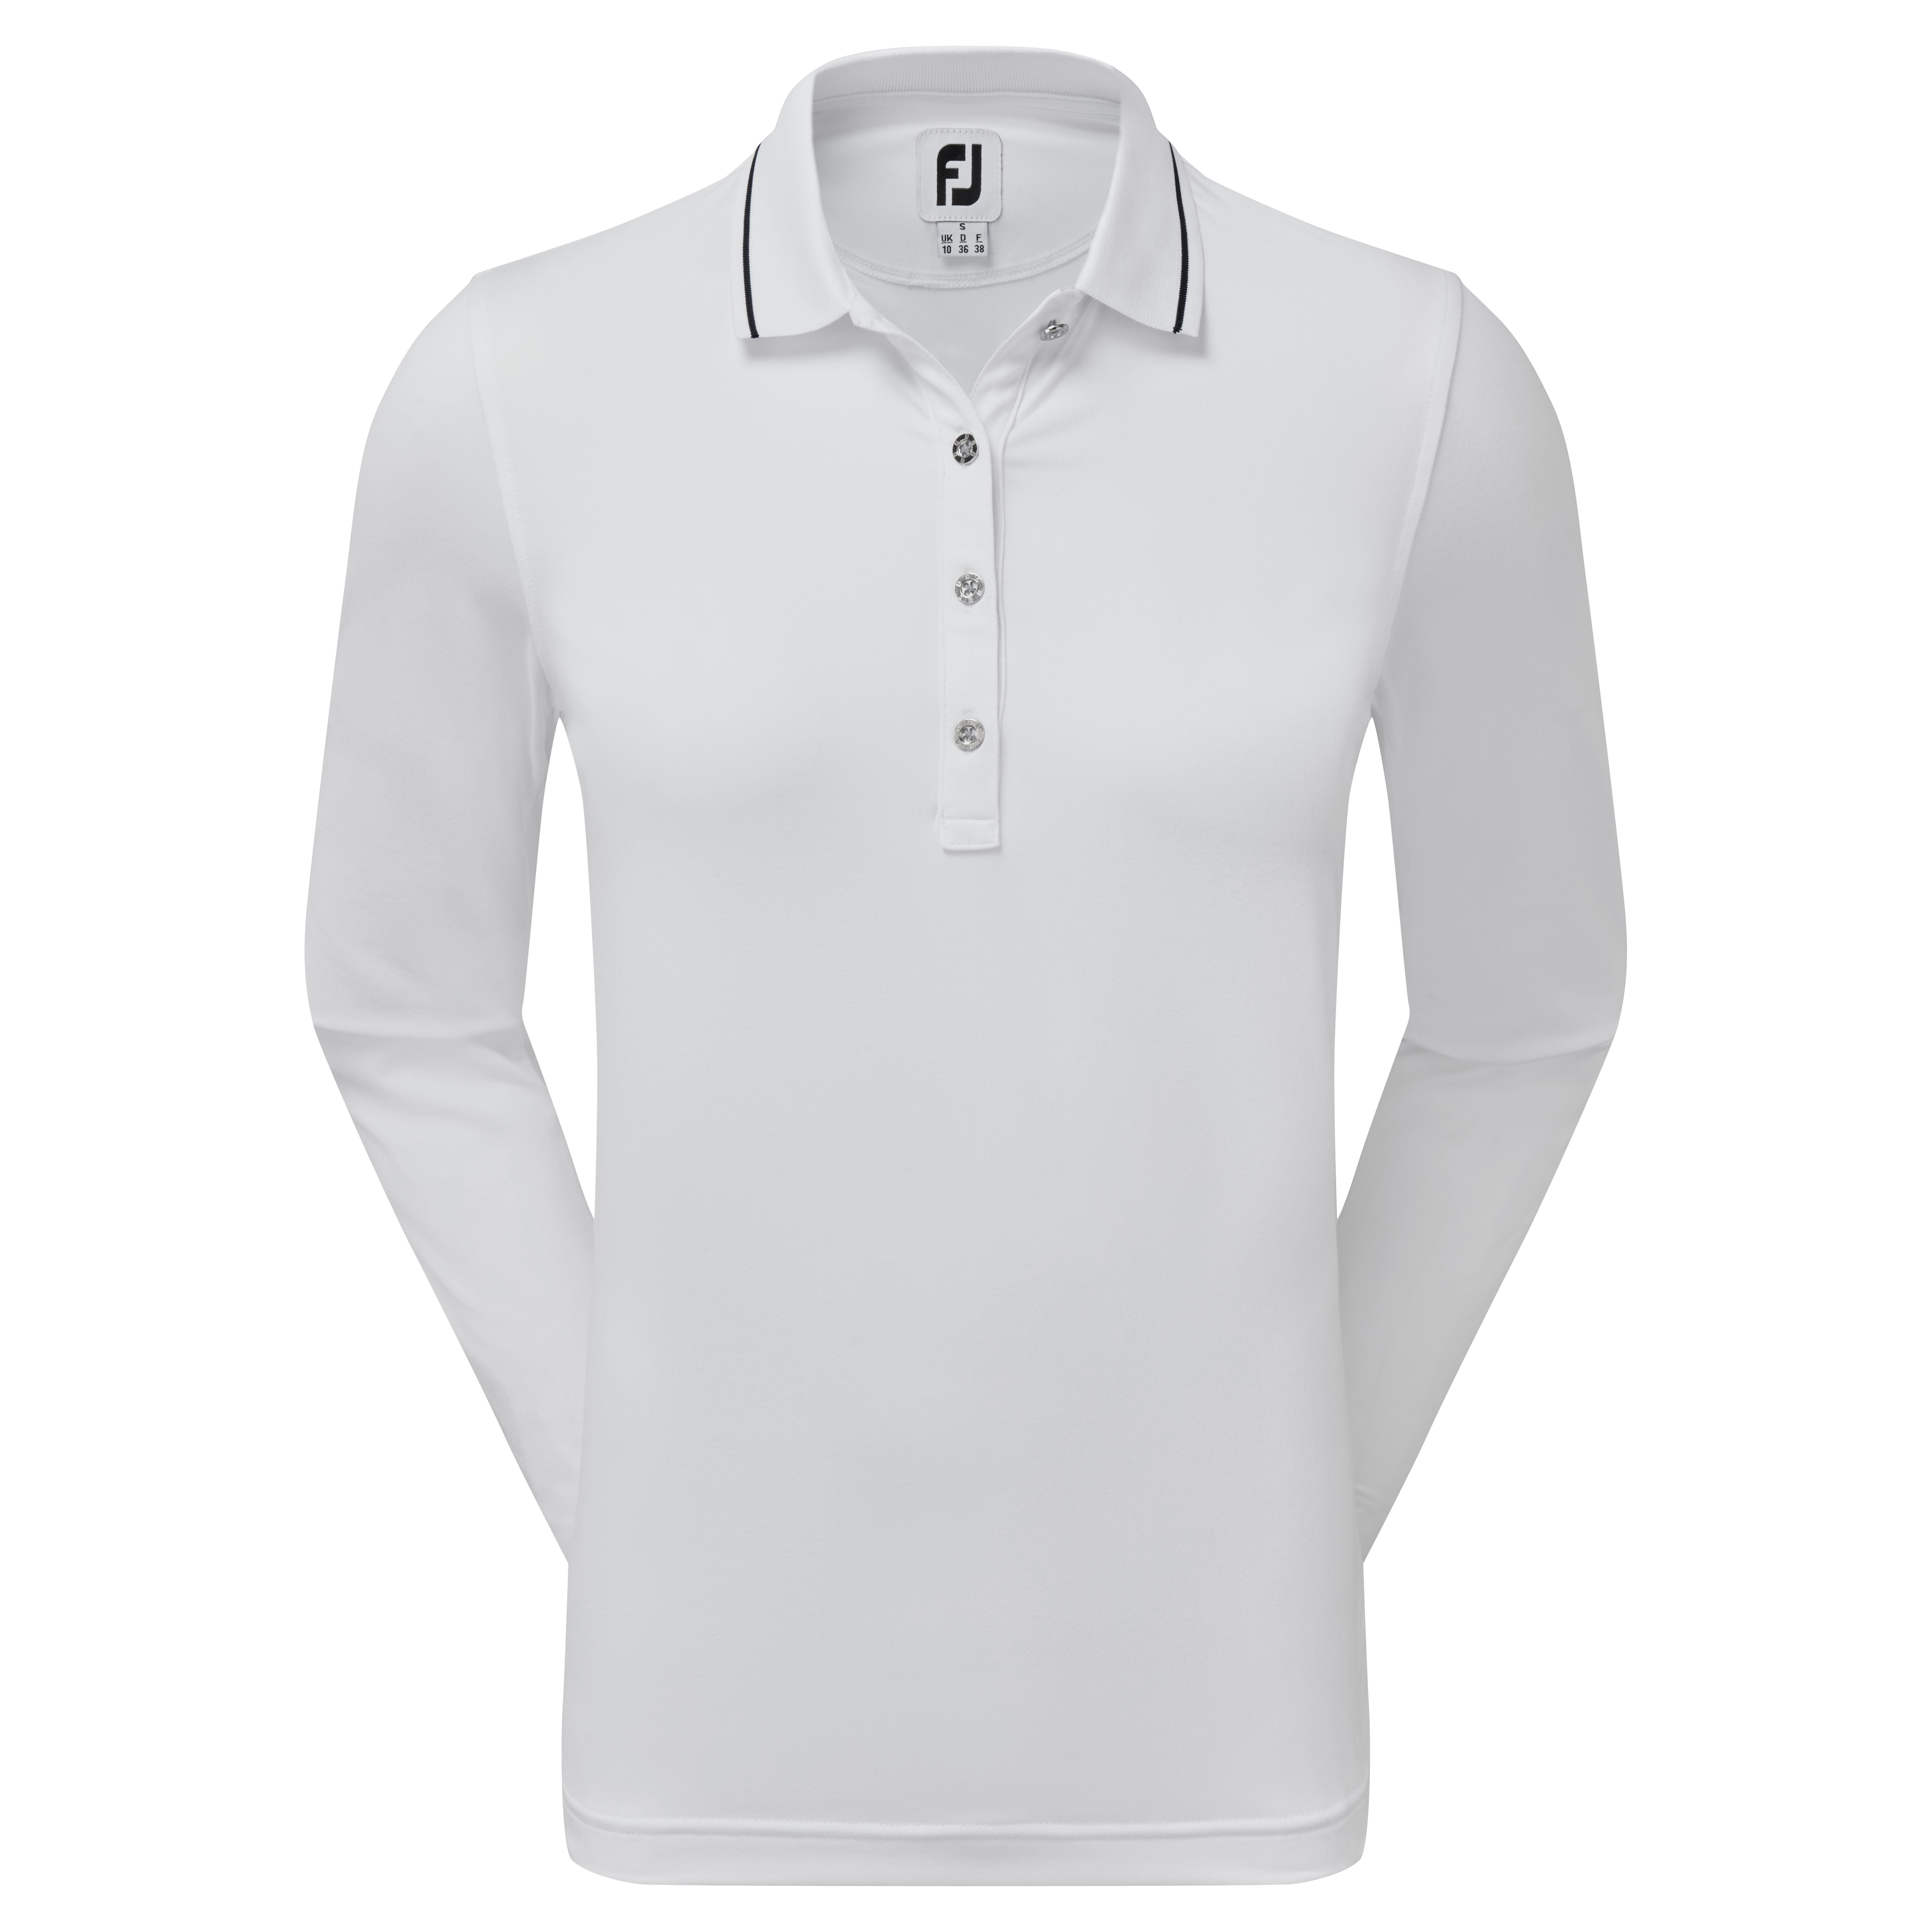 FootJoy Thermal dámské golfové triko s dlouhým rukávem, bílé, vel. S